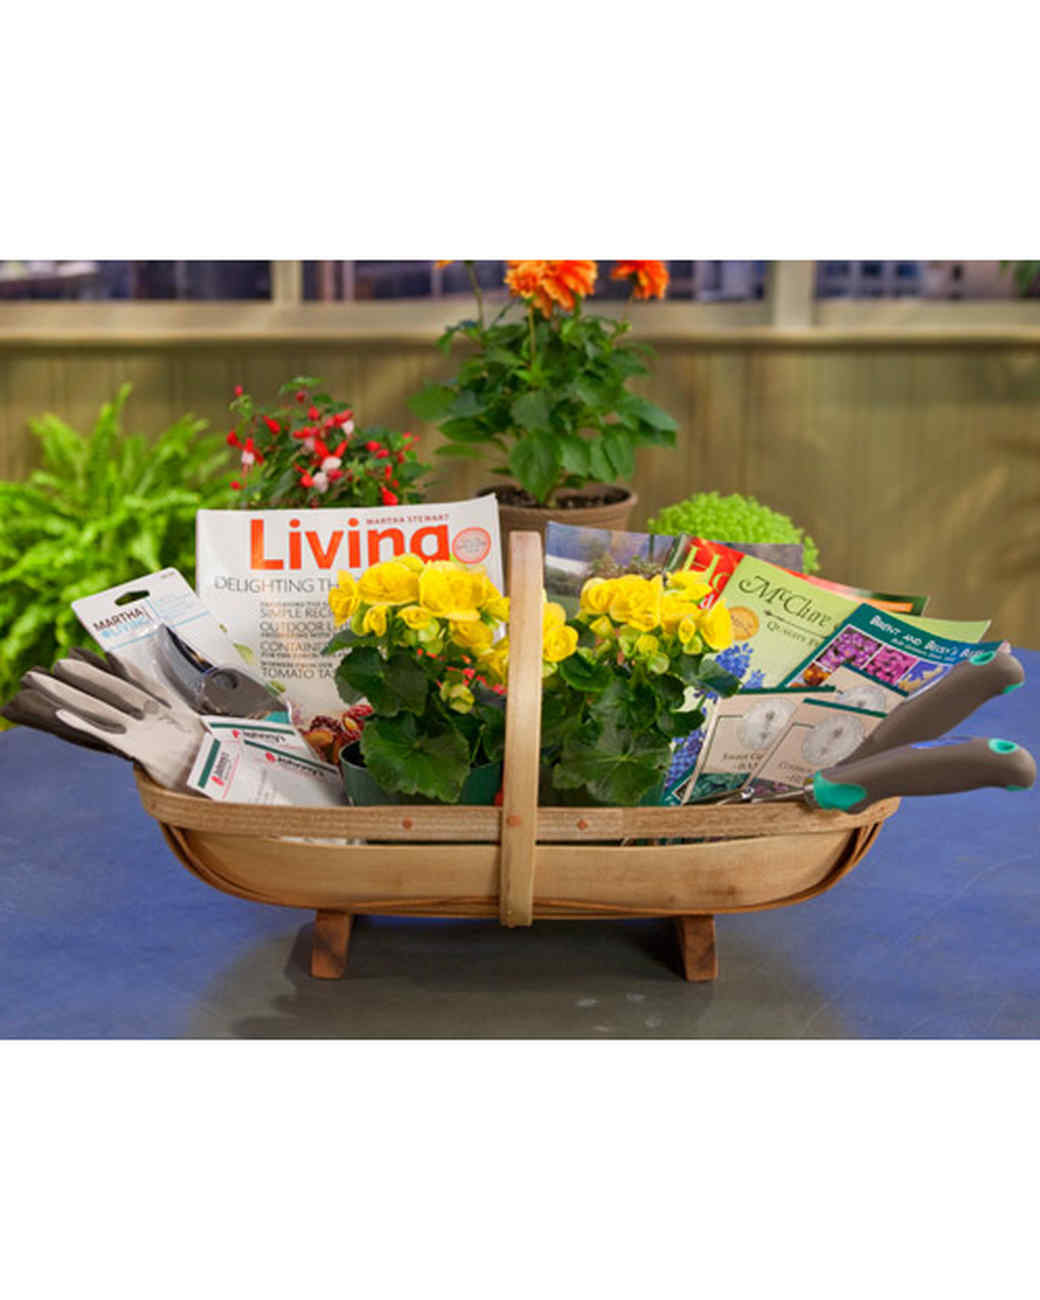 Gardening Gift Basket Ideas
 Gardening Gift Basket & Video